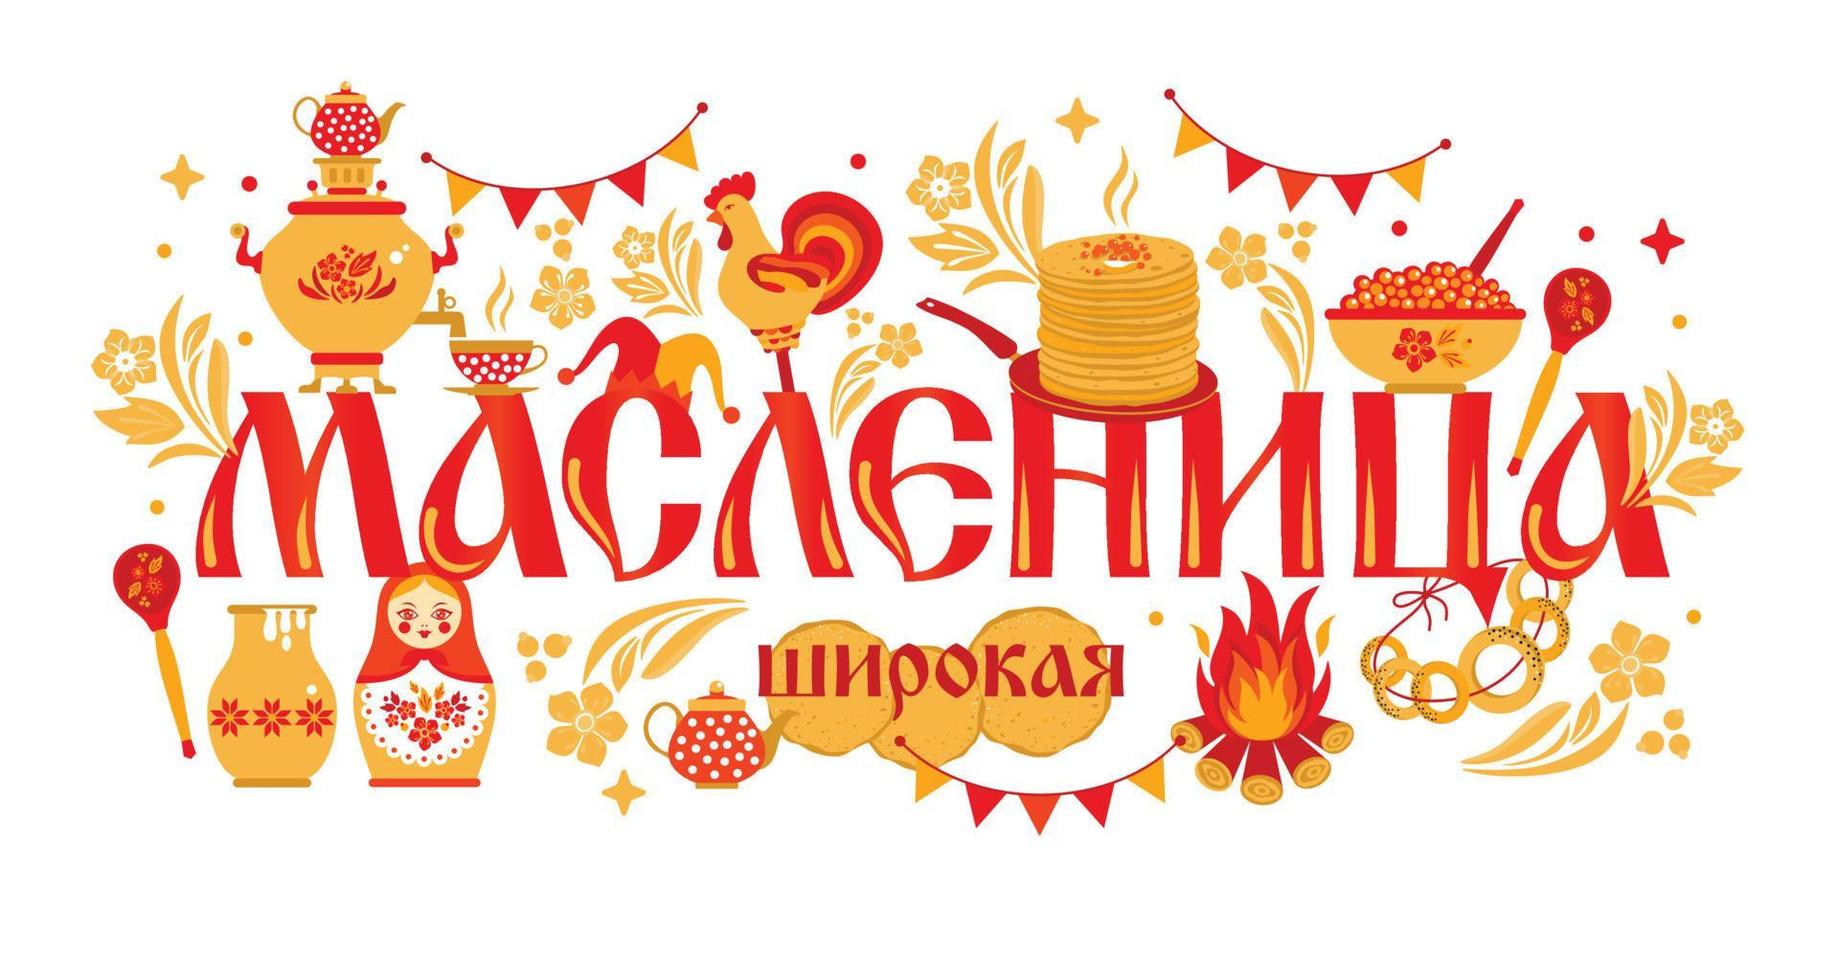 vector set banner sobre el tema del carnaval festivo ruso. traducción del ruso-shrovetide o maslenitsa.